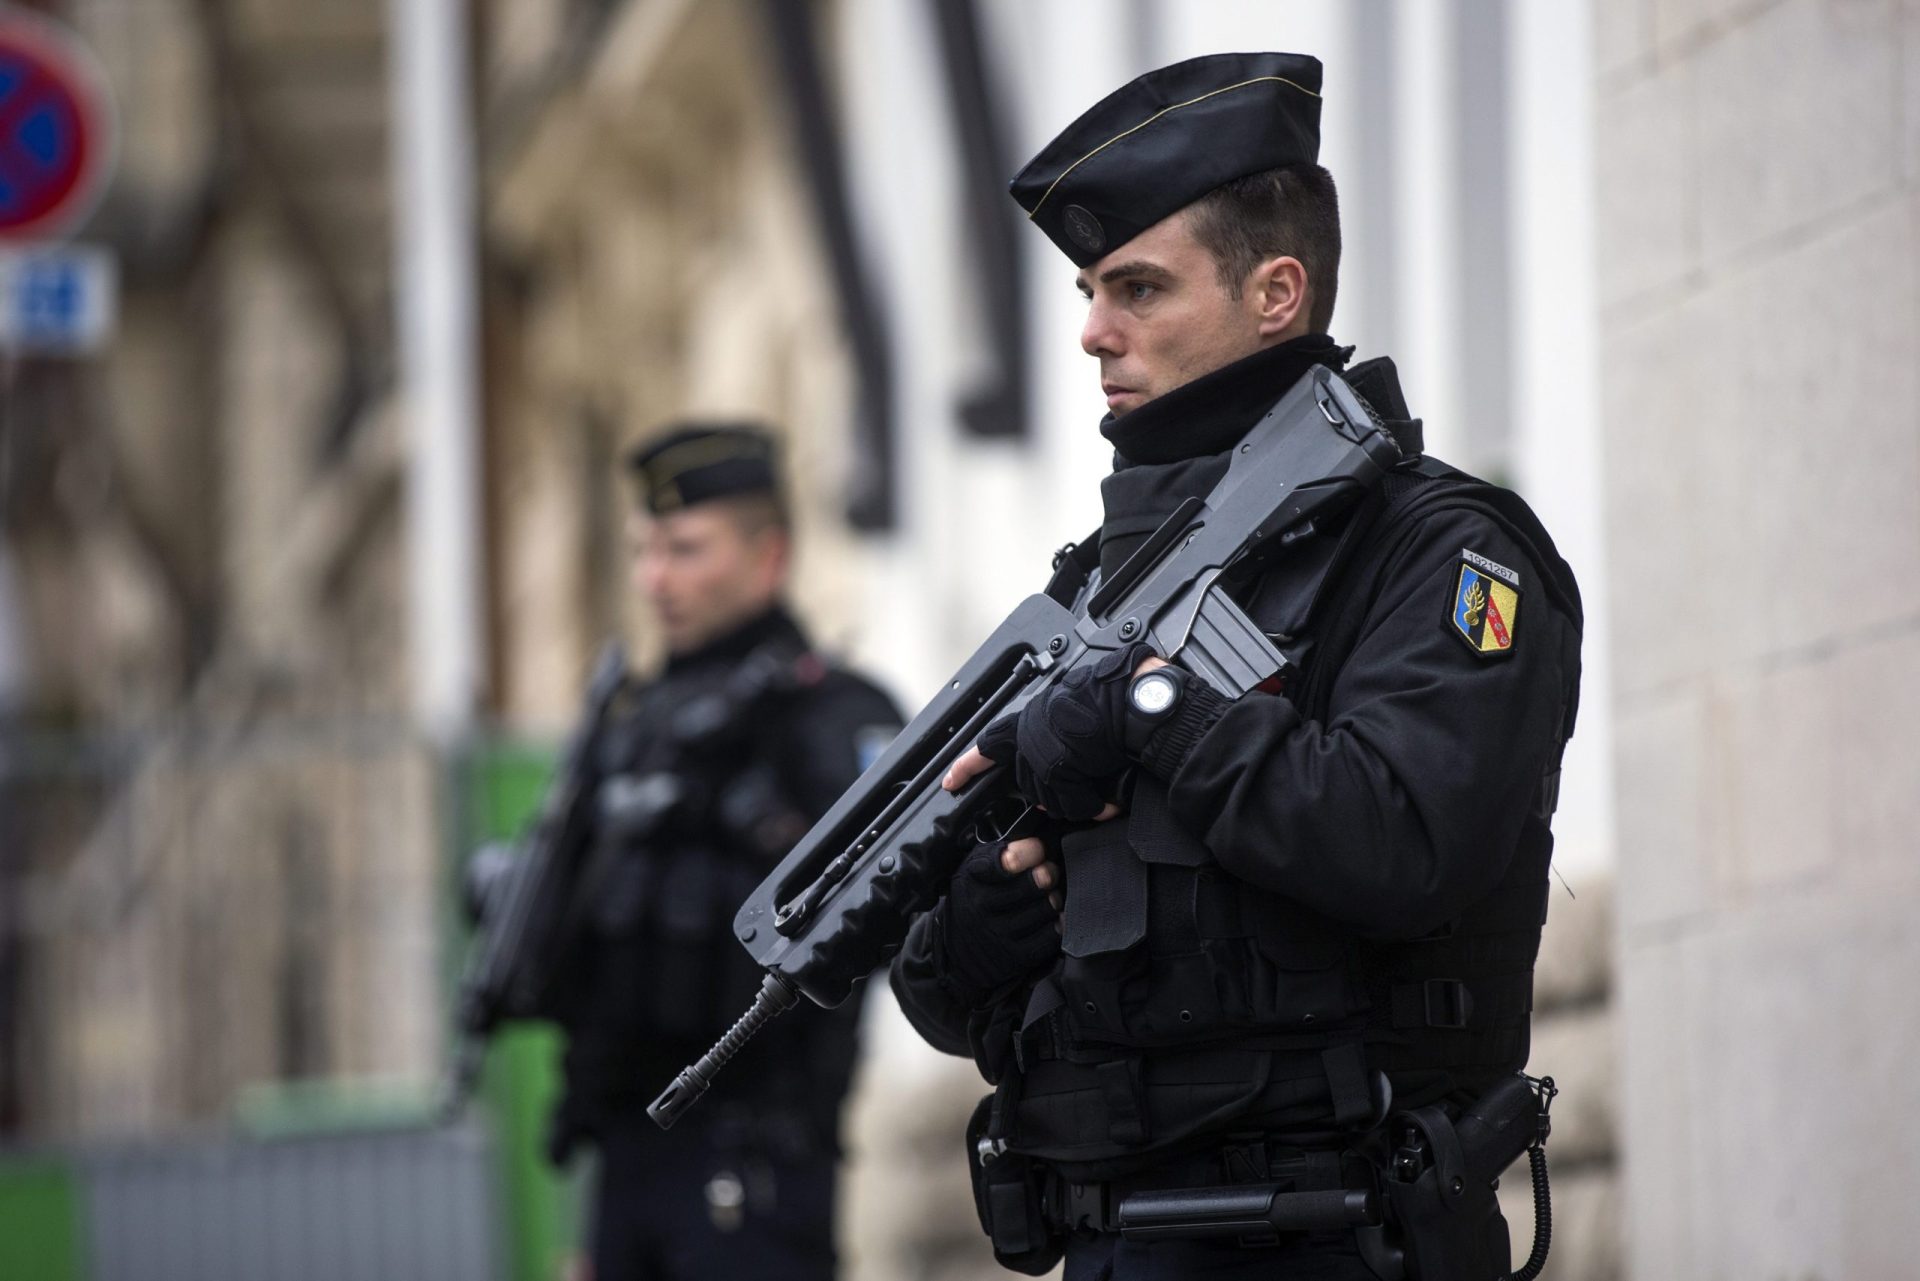 Conferência de Paris sem manifestações e com muita segurança devido a atentados